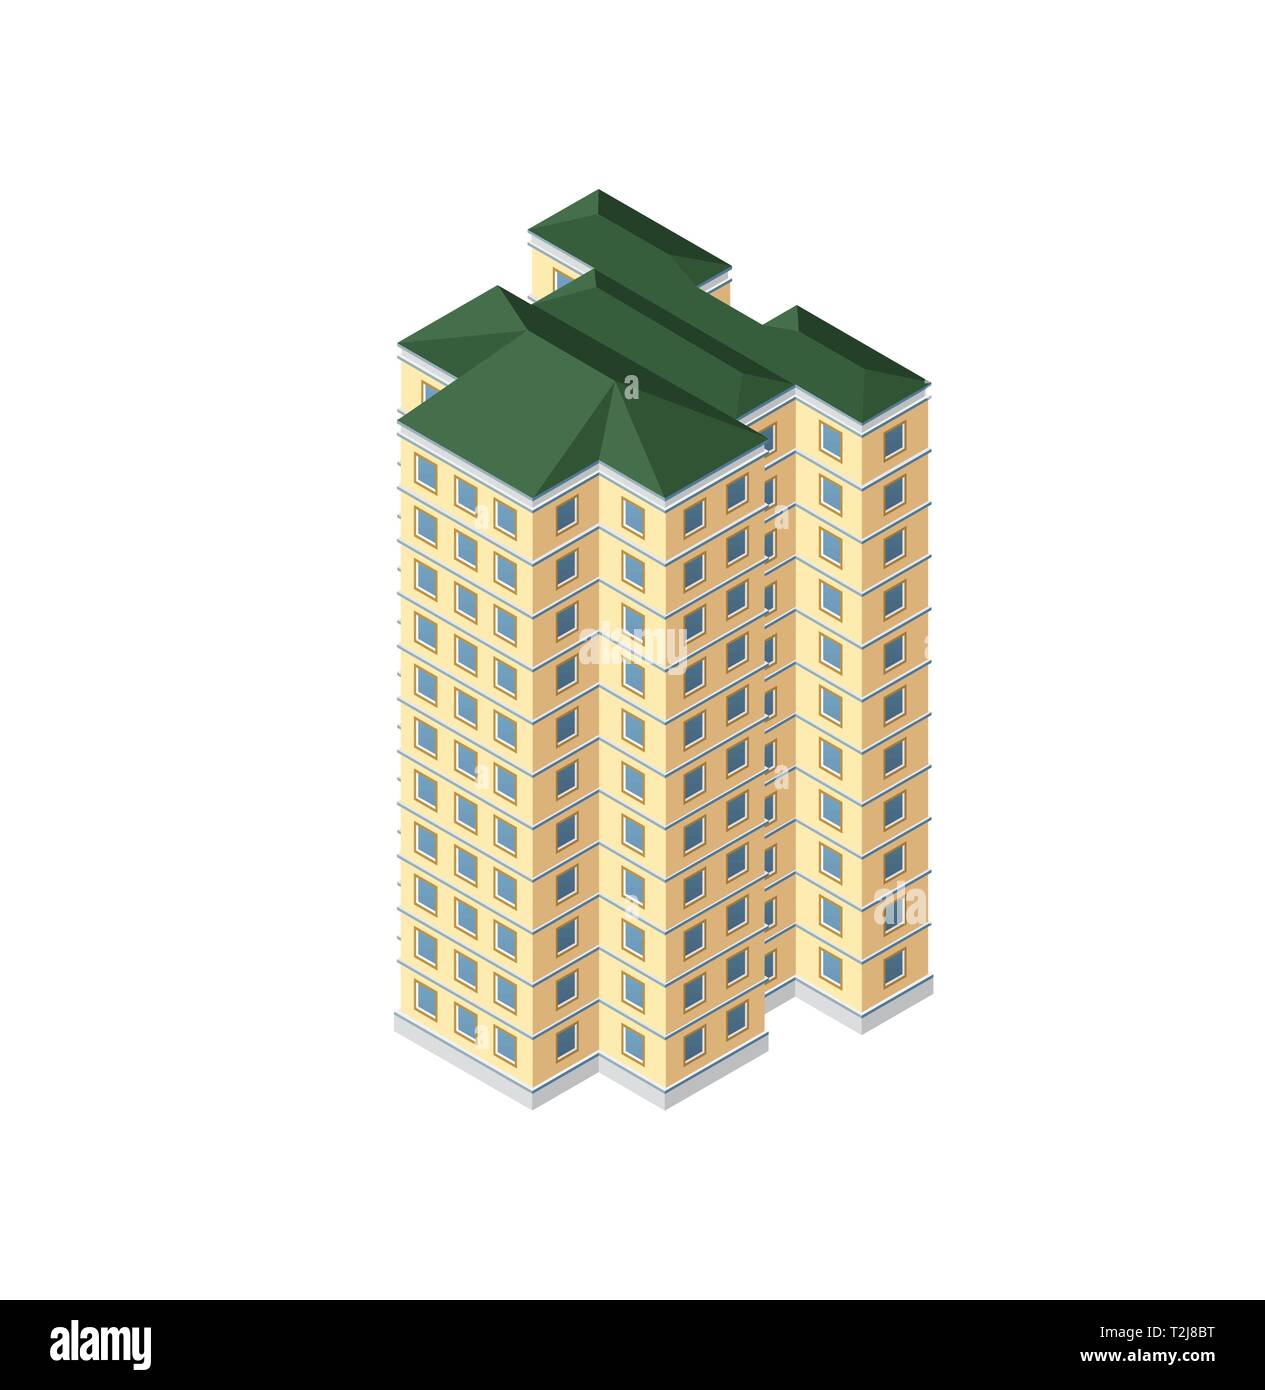 Die Intelligenz Gebäude Hochhaus Architektur ist eine Idee der Technologie Business Equipment Flat Style urban isometrische Darstellung Stock Vektor